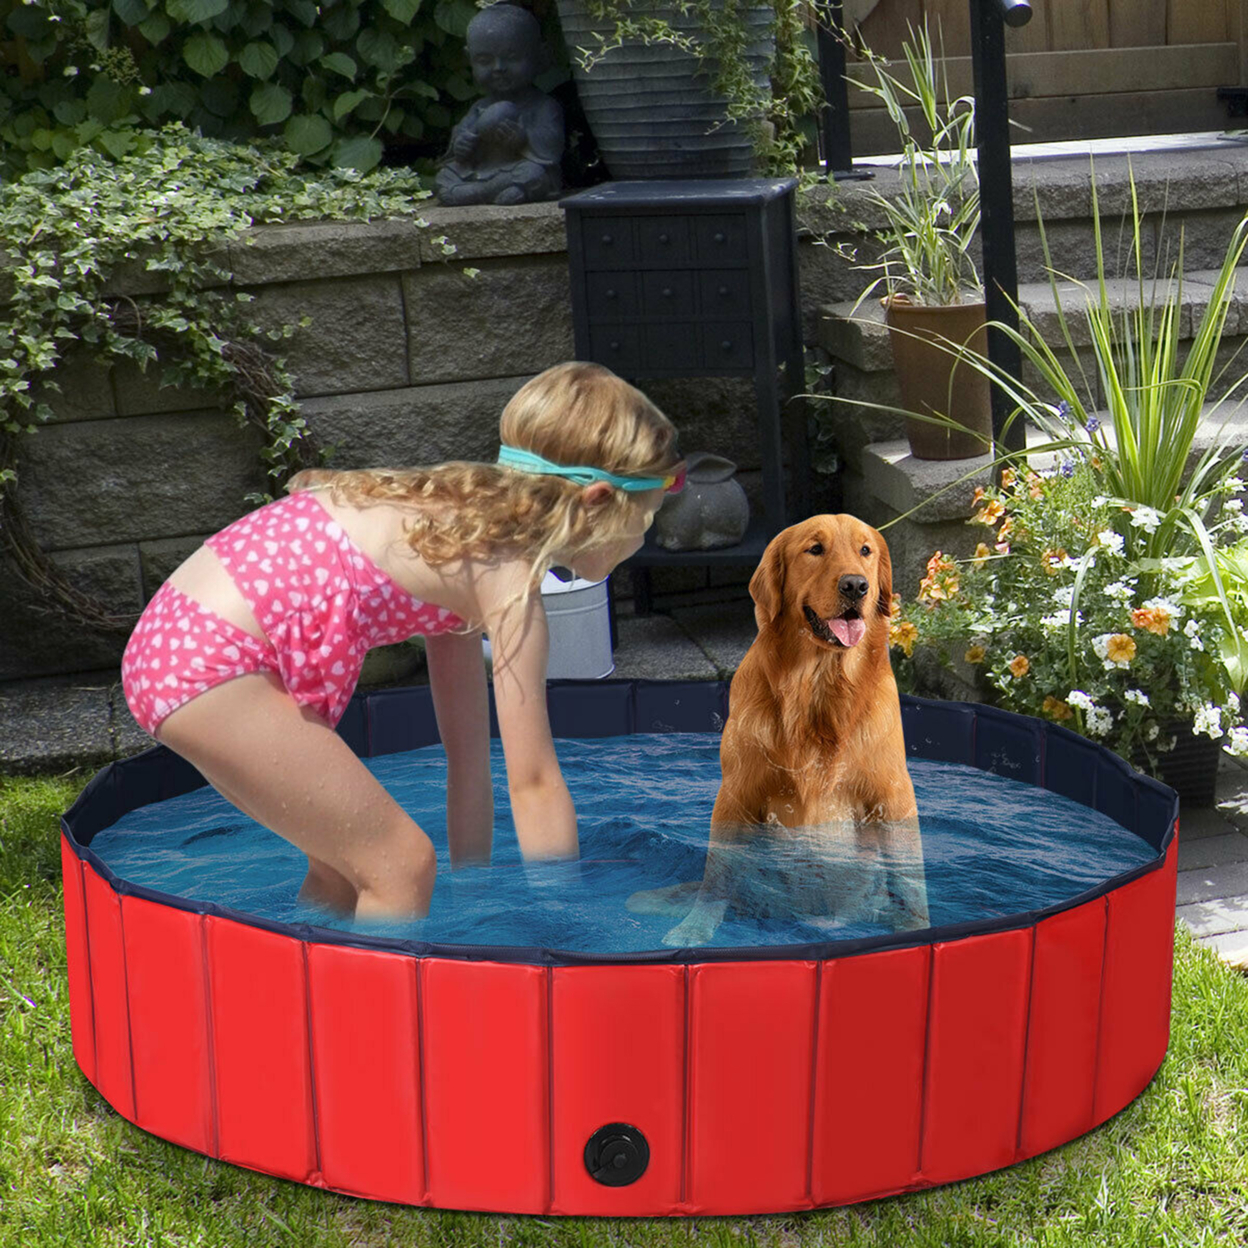 55'' Foldable Dog Pet Pool Kiddie Bathing Tub Indoor Outdoor Leakproof Portable